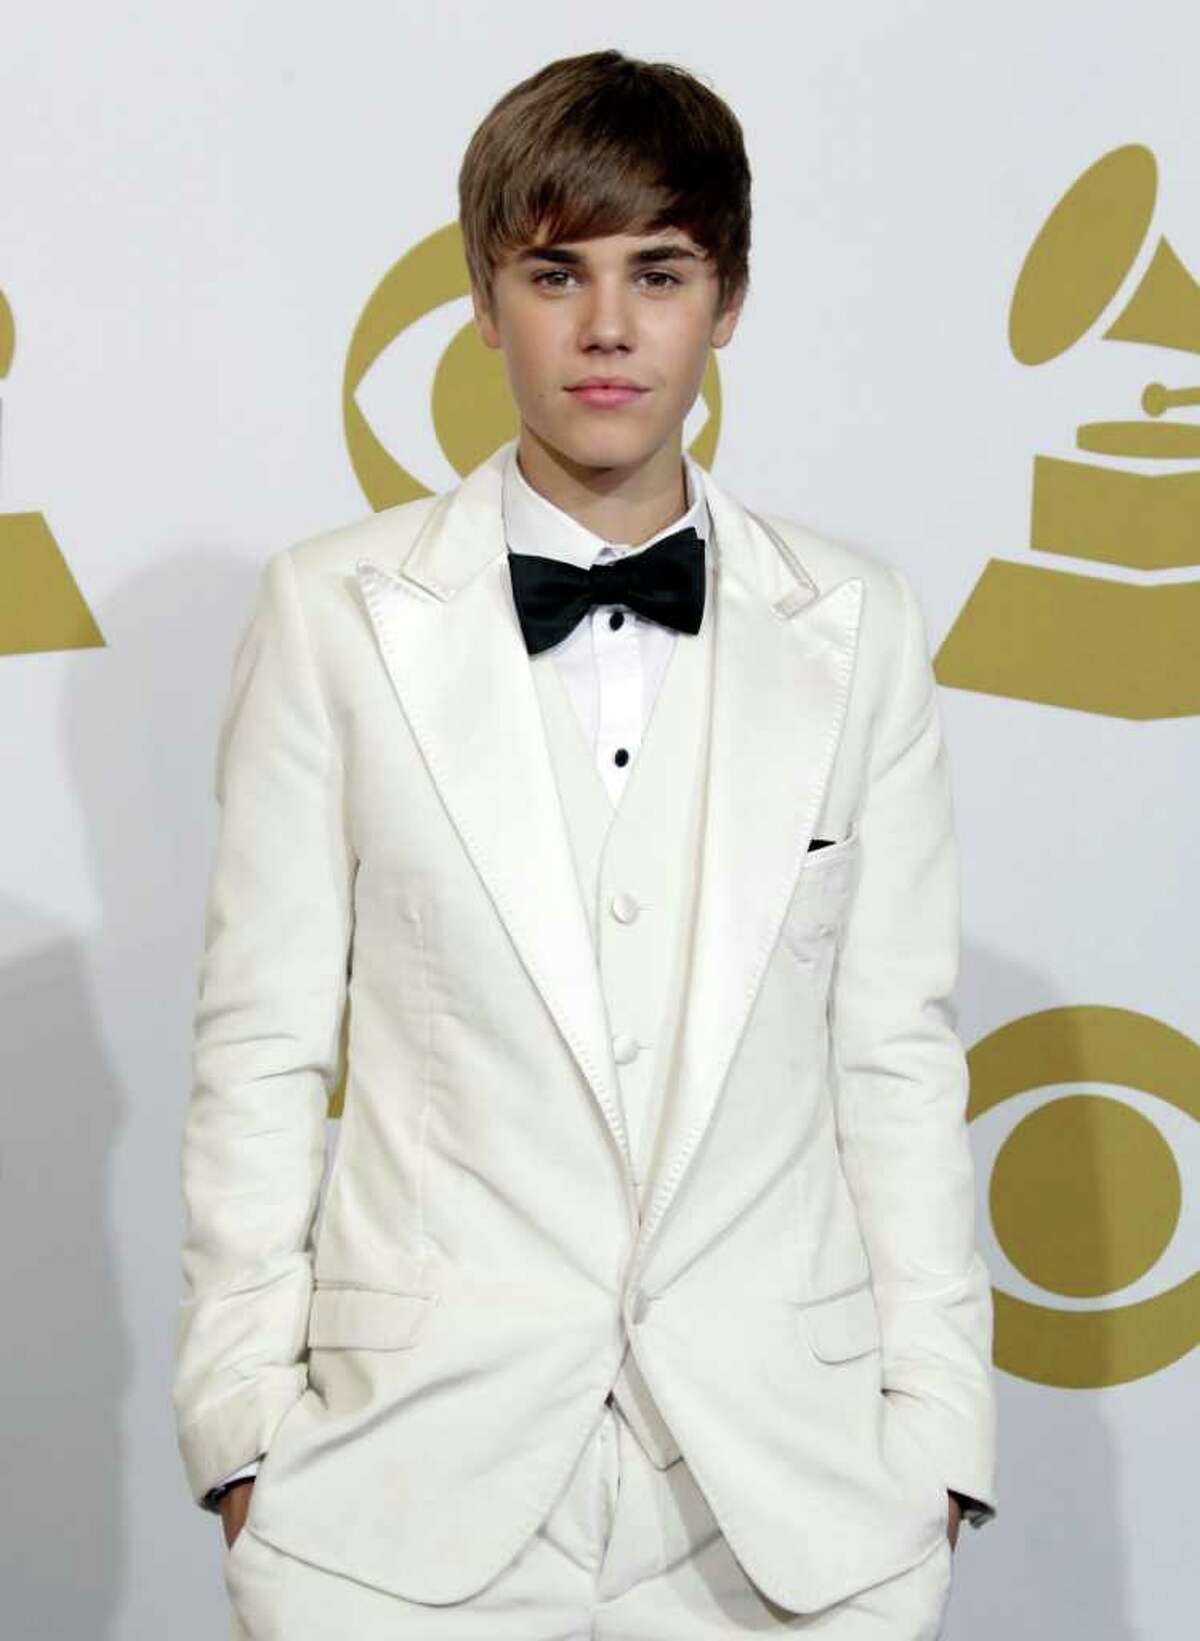 Pop star Justin Bieber is 18.